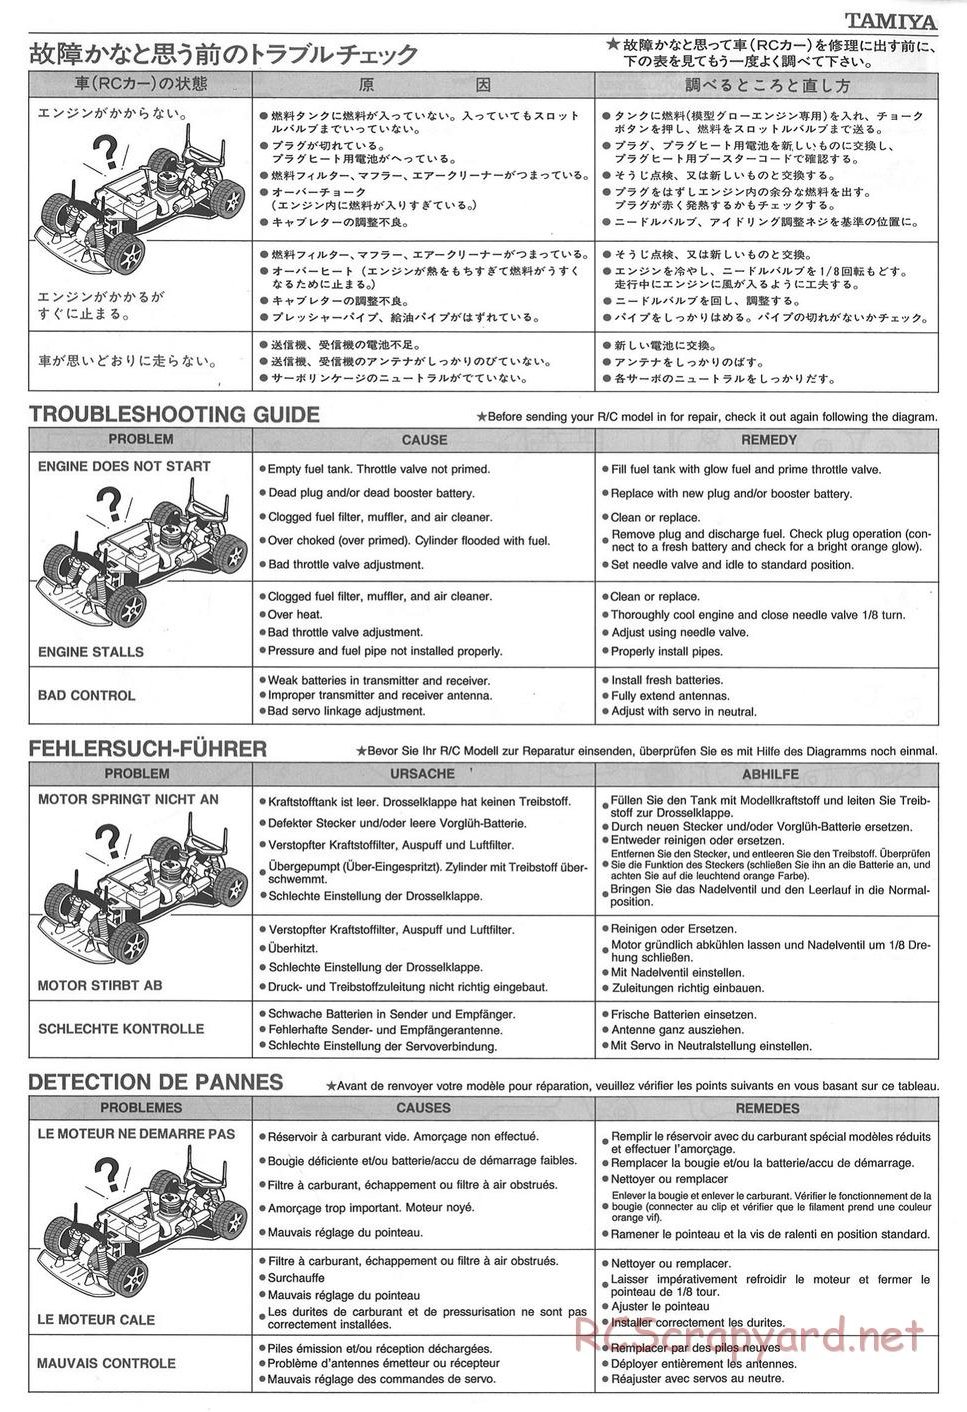 Tamiya - TGX Mk.1 Chassis - Manual - Page 24